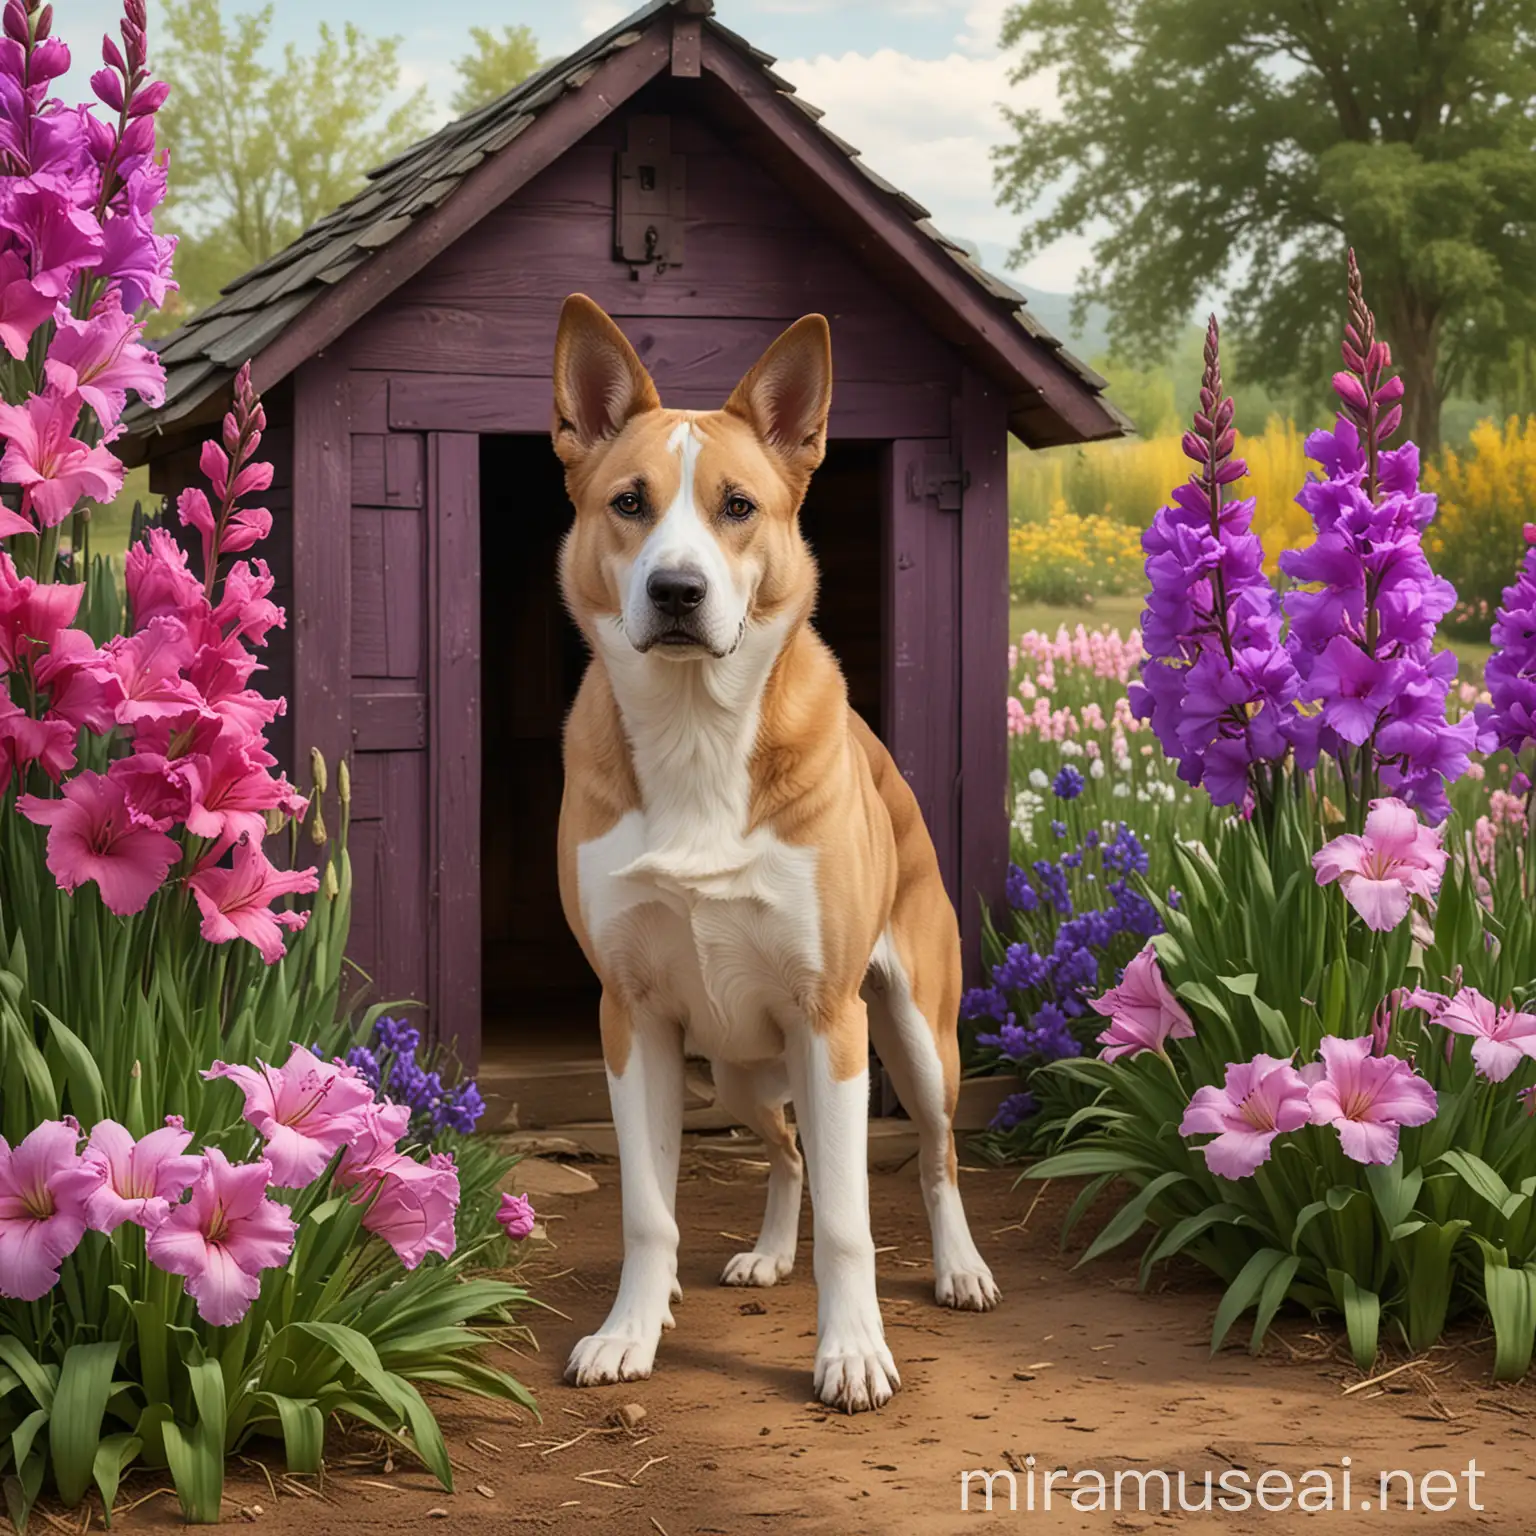 Majestic Dog Standing in GladiolusFramed Farm Scene